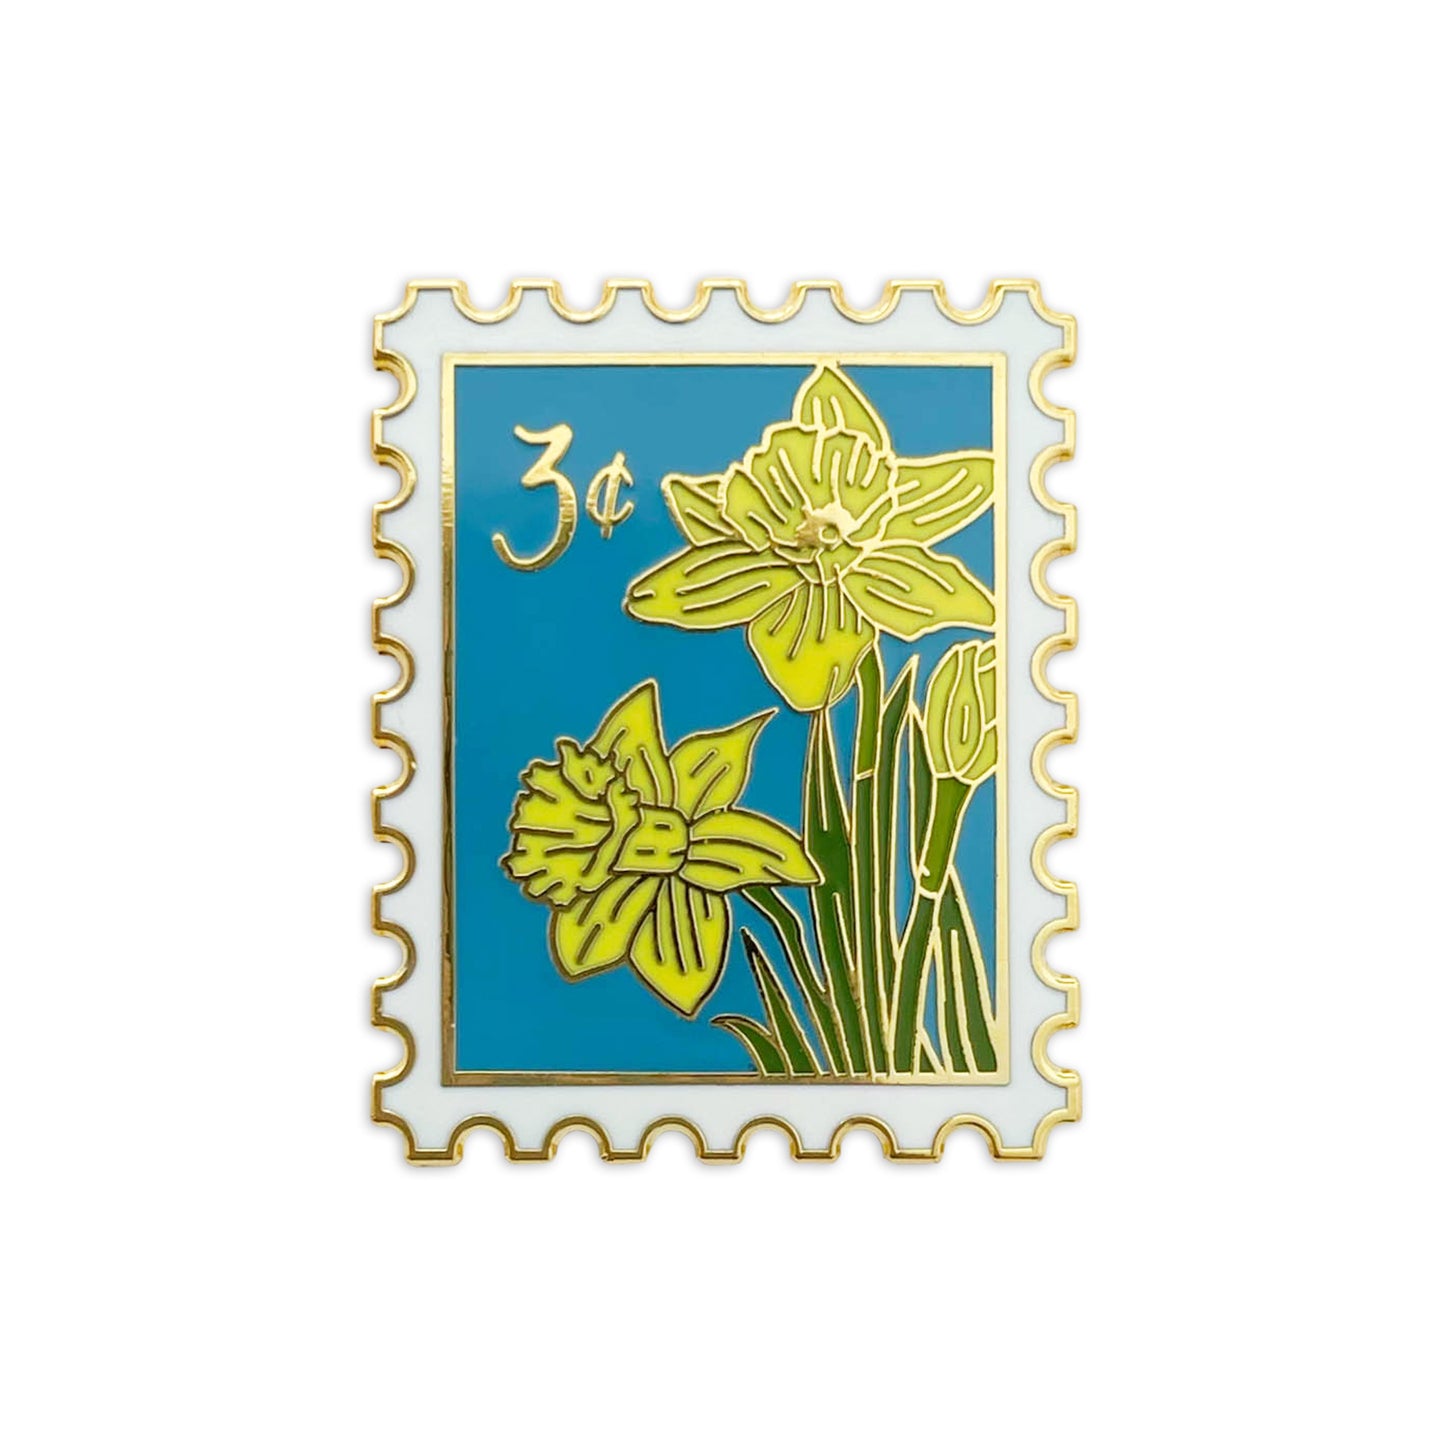 Daffodil (March) Birth Month Enamel Pin